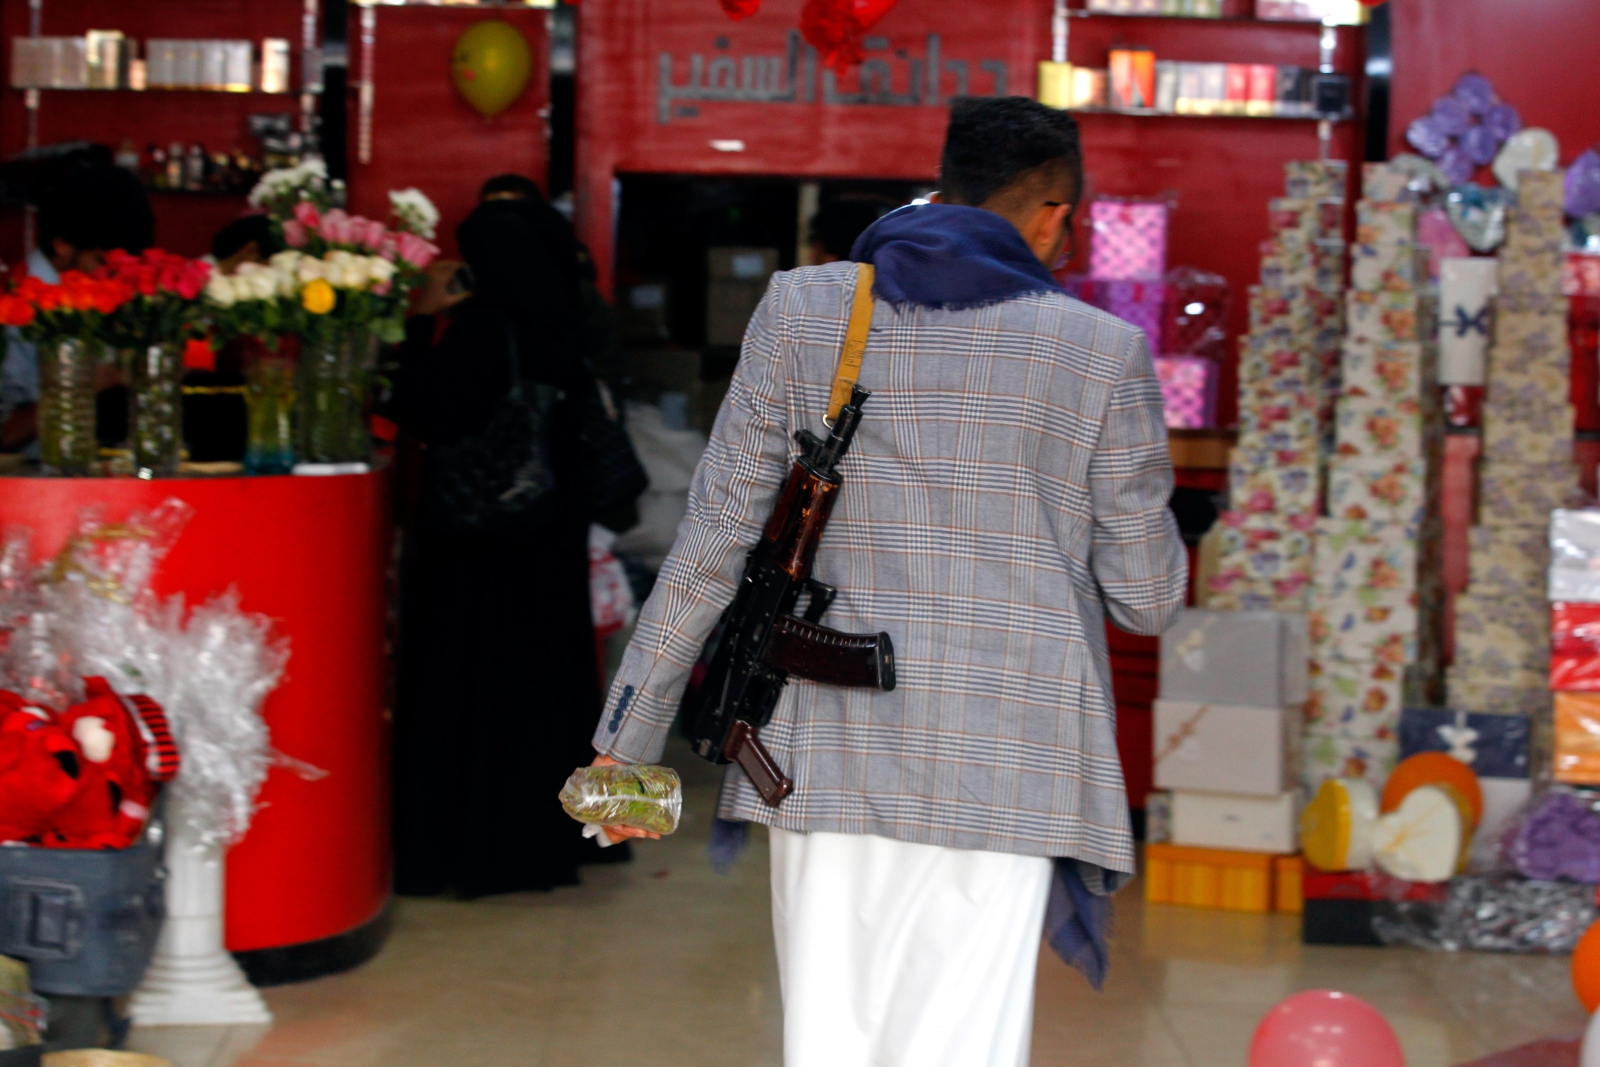 Uzbrojony obywatel Jemenu przechodzi przez sklep z prezentami walentynkowymi.